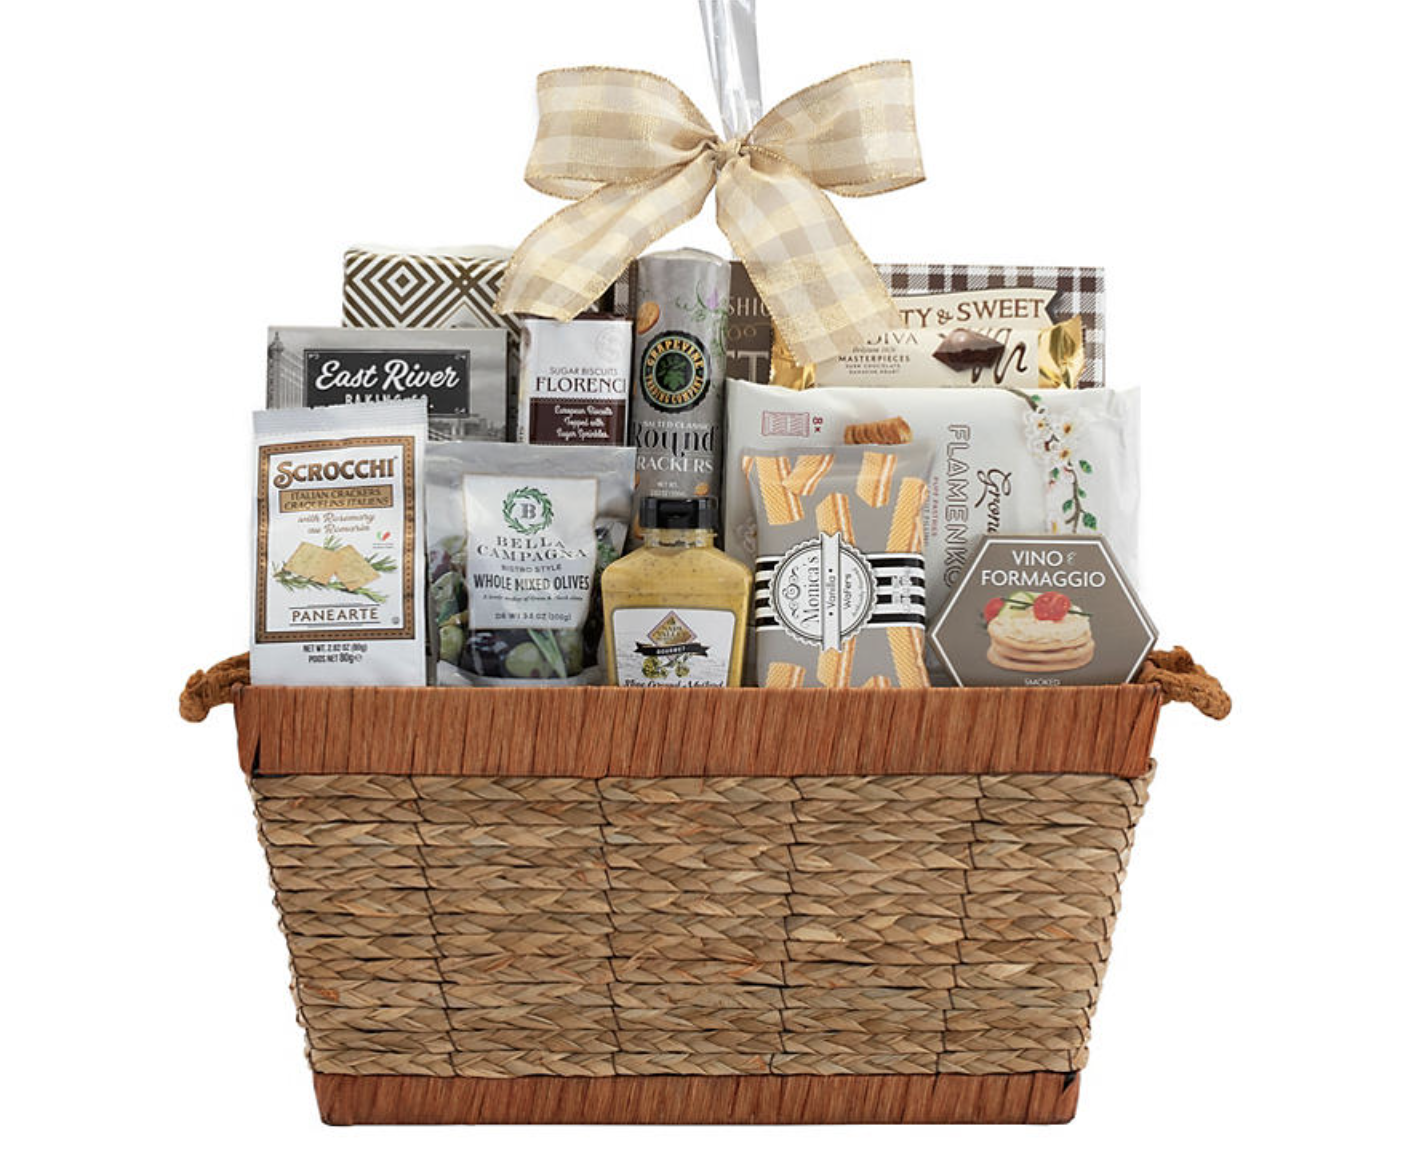 Gourmet food gift basket